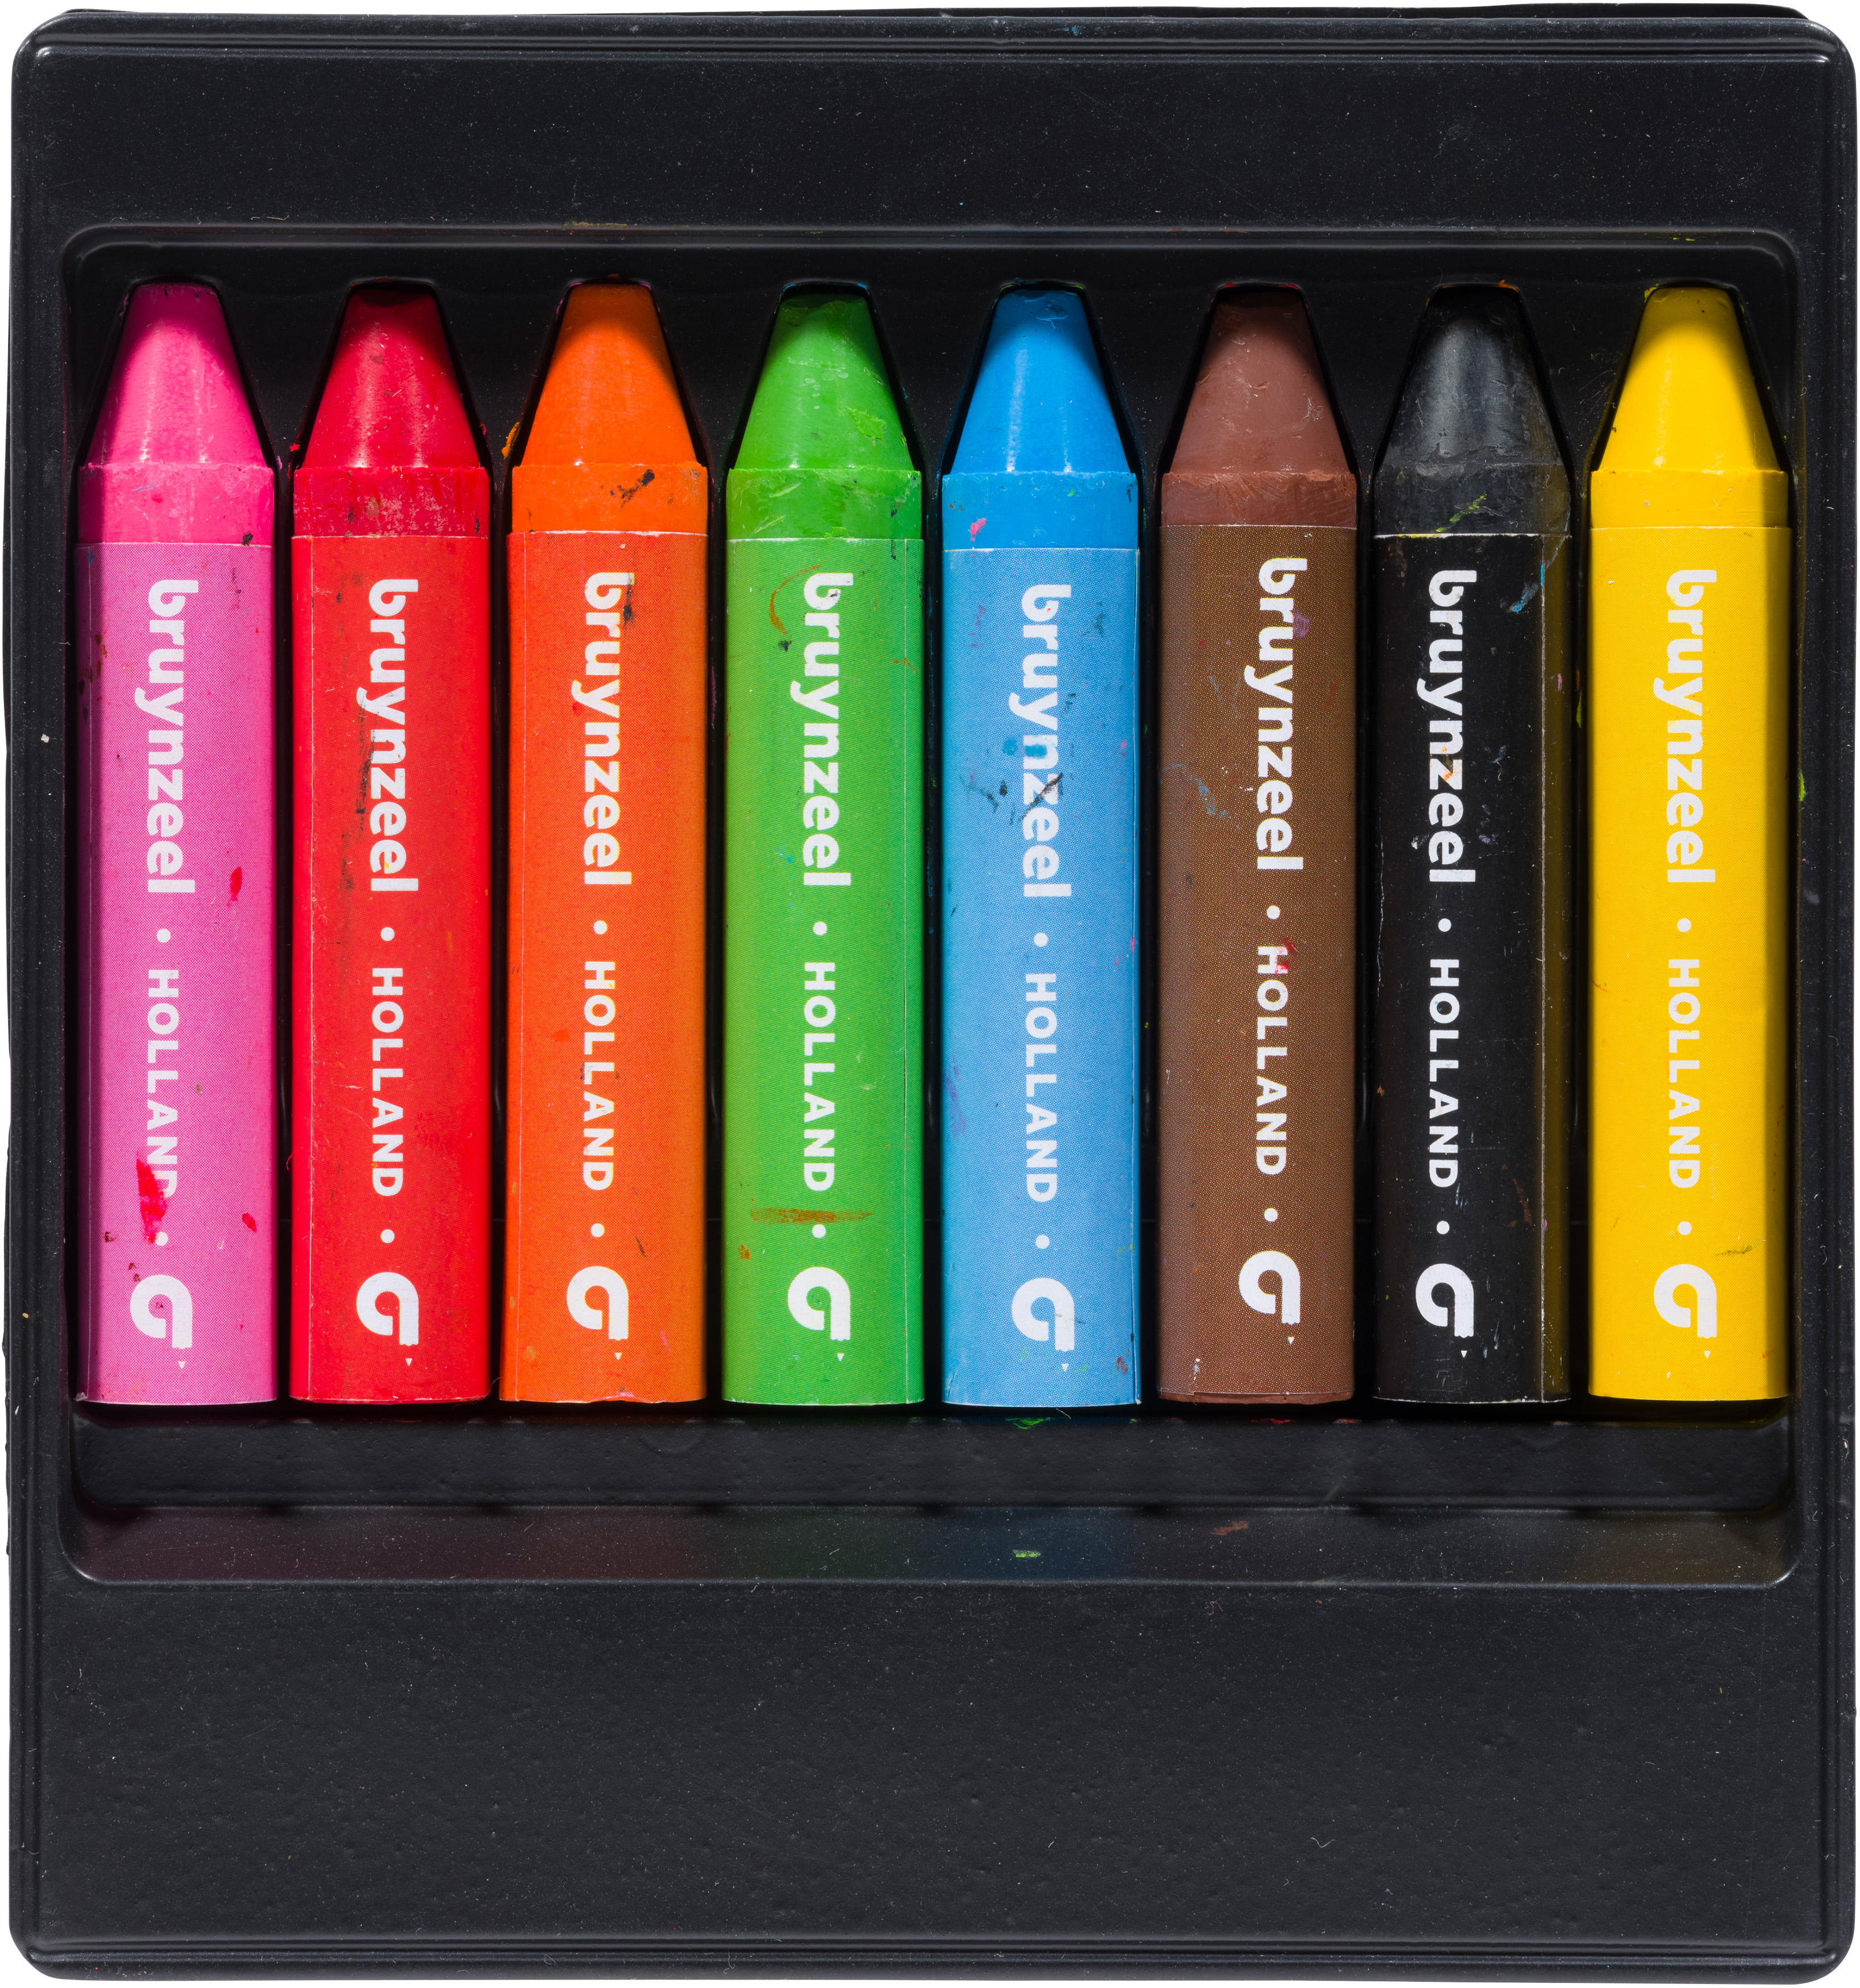 BRUYNZEEL Crayons de Cire Kids 60131008 8 couleurs